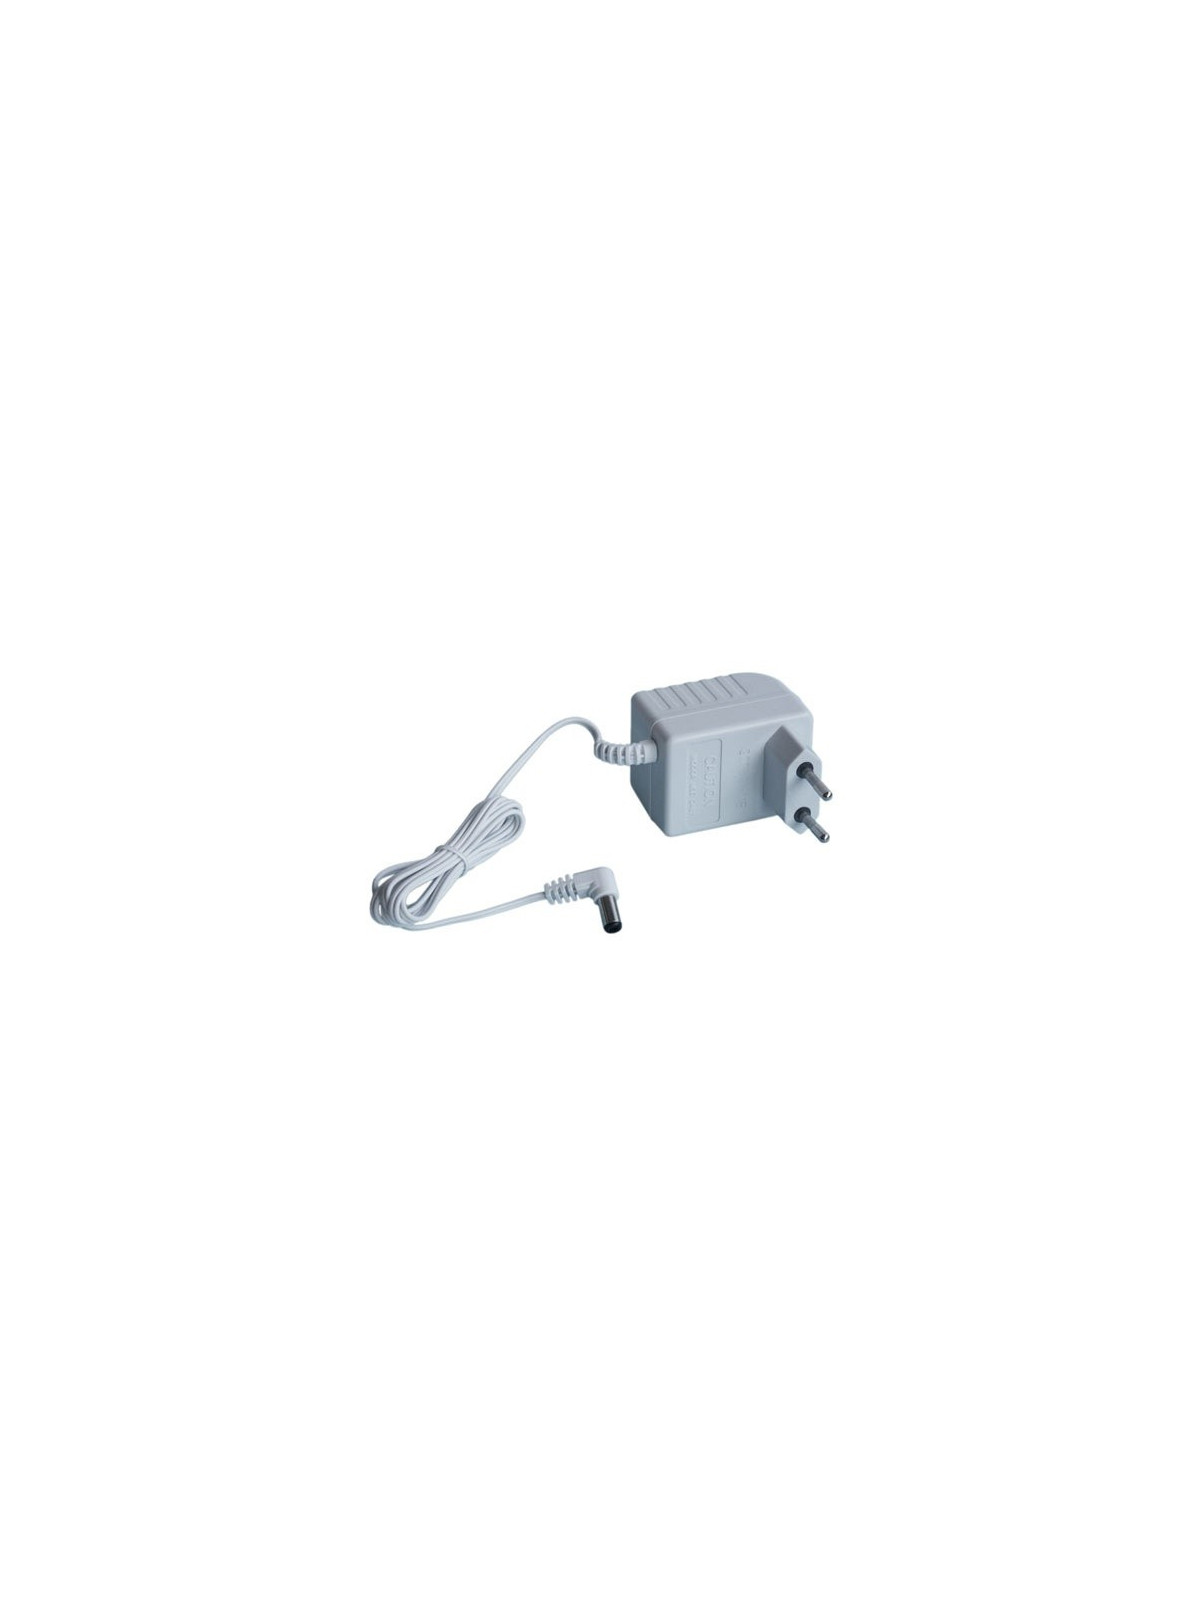 Chargeur secteur Black & Decker DustBuster V3601 - Aspirateur